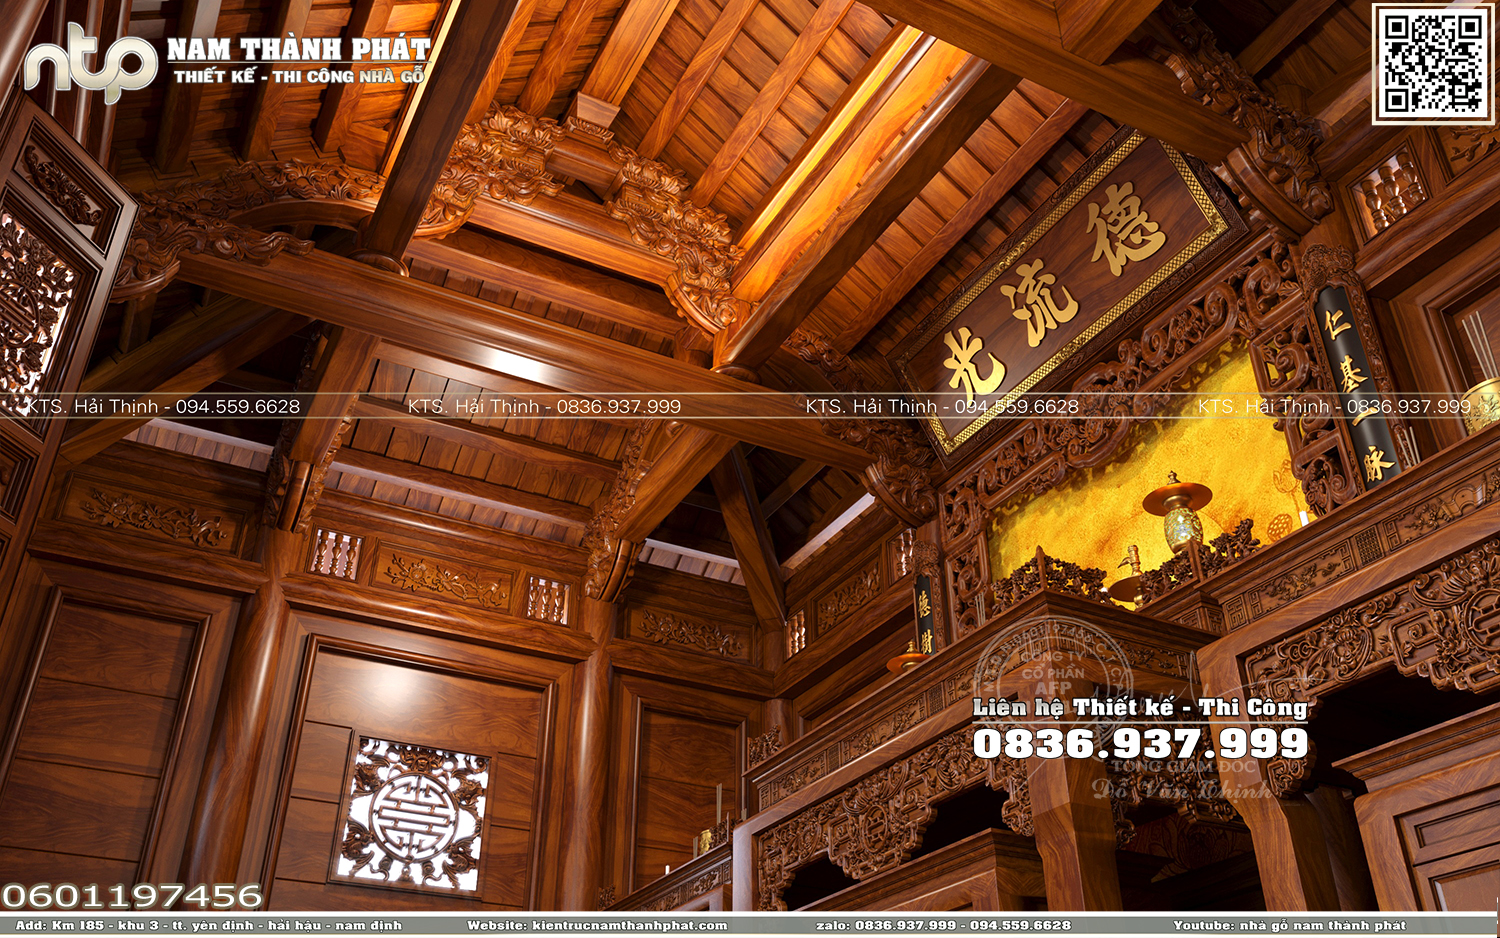 Nội thất nhà gỗ 3 gian 4 mái đao truyền thống - Không gian thờ cúng linh thiêng của gia chủ tại Hà Nội